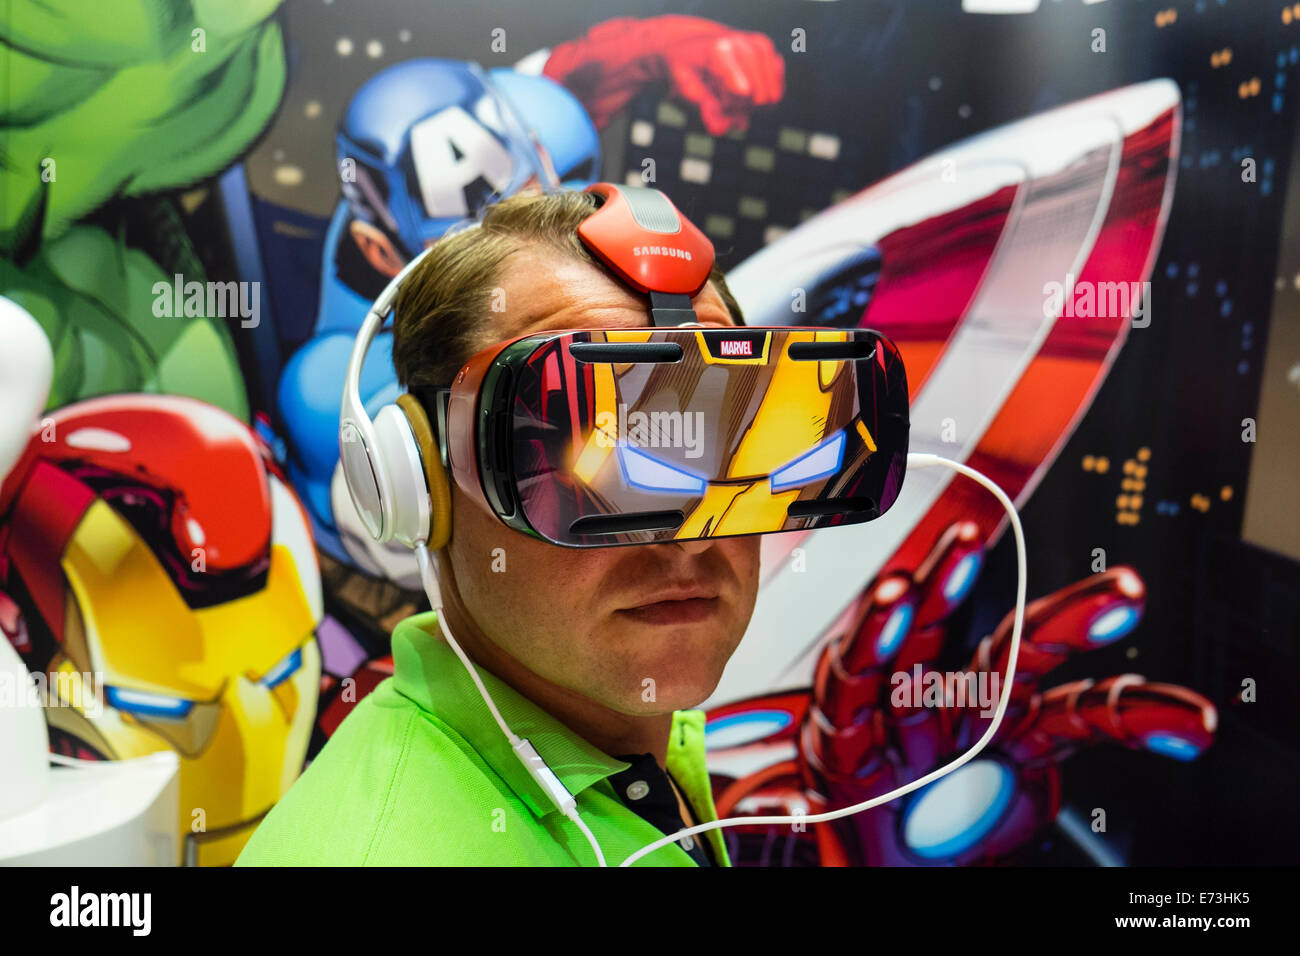 Berlín, Alemania. El 5 de septiembre de 2014. Los visitantes que usaban engranajes Samsung VR casco de realidad virtual lanzada en el IFA Berlín 2014 Crédito: Iain Masterton/Alamy Live News Foto de stock